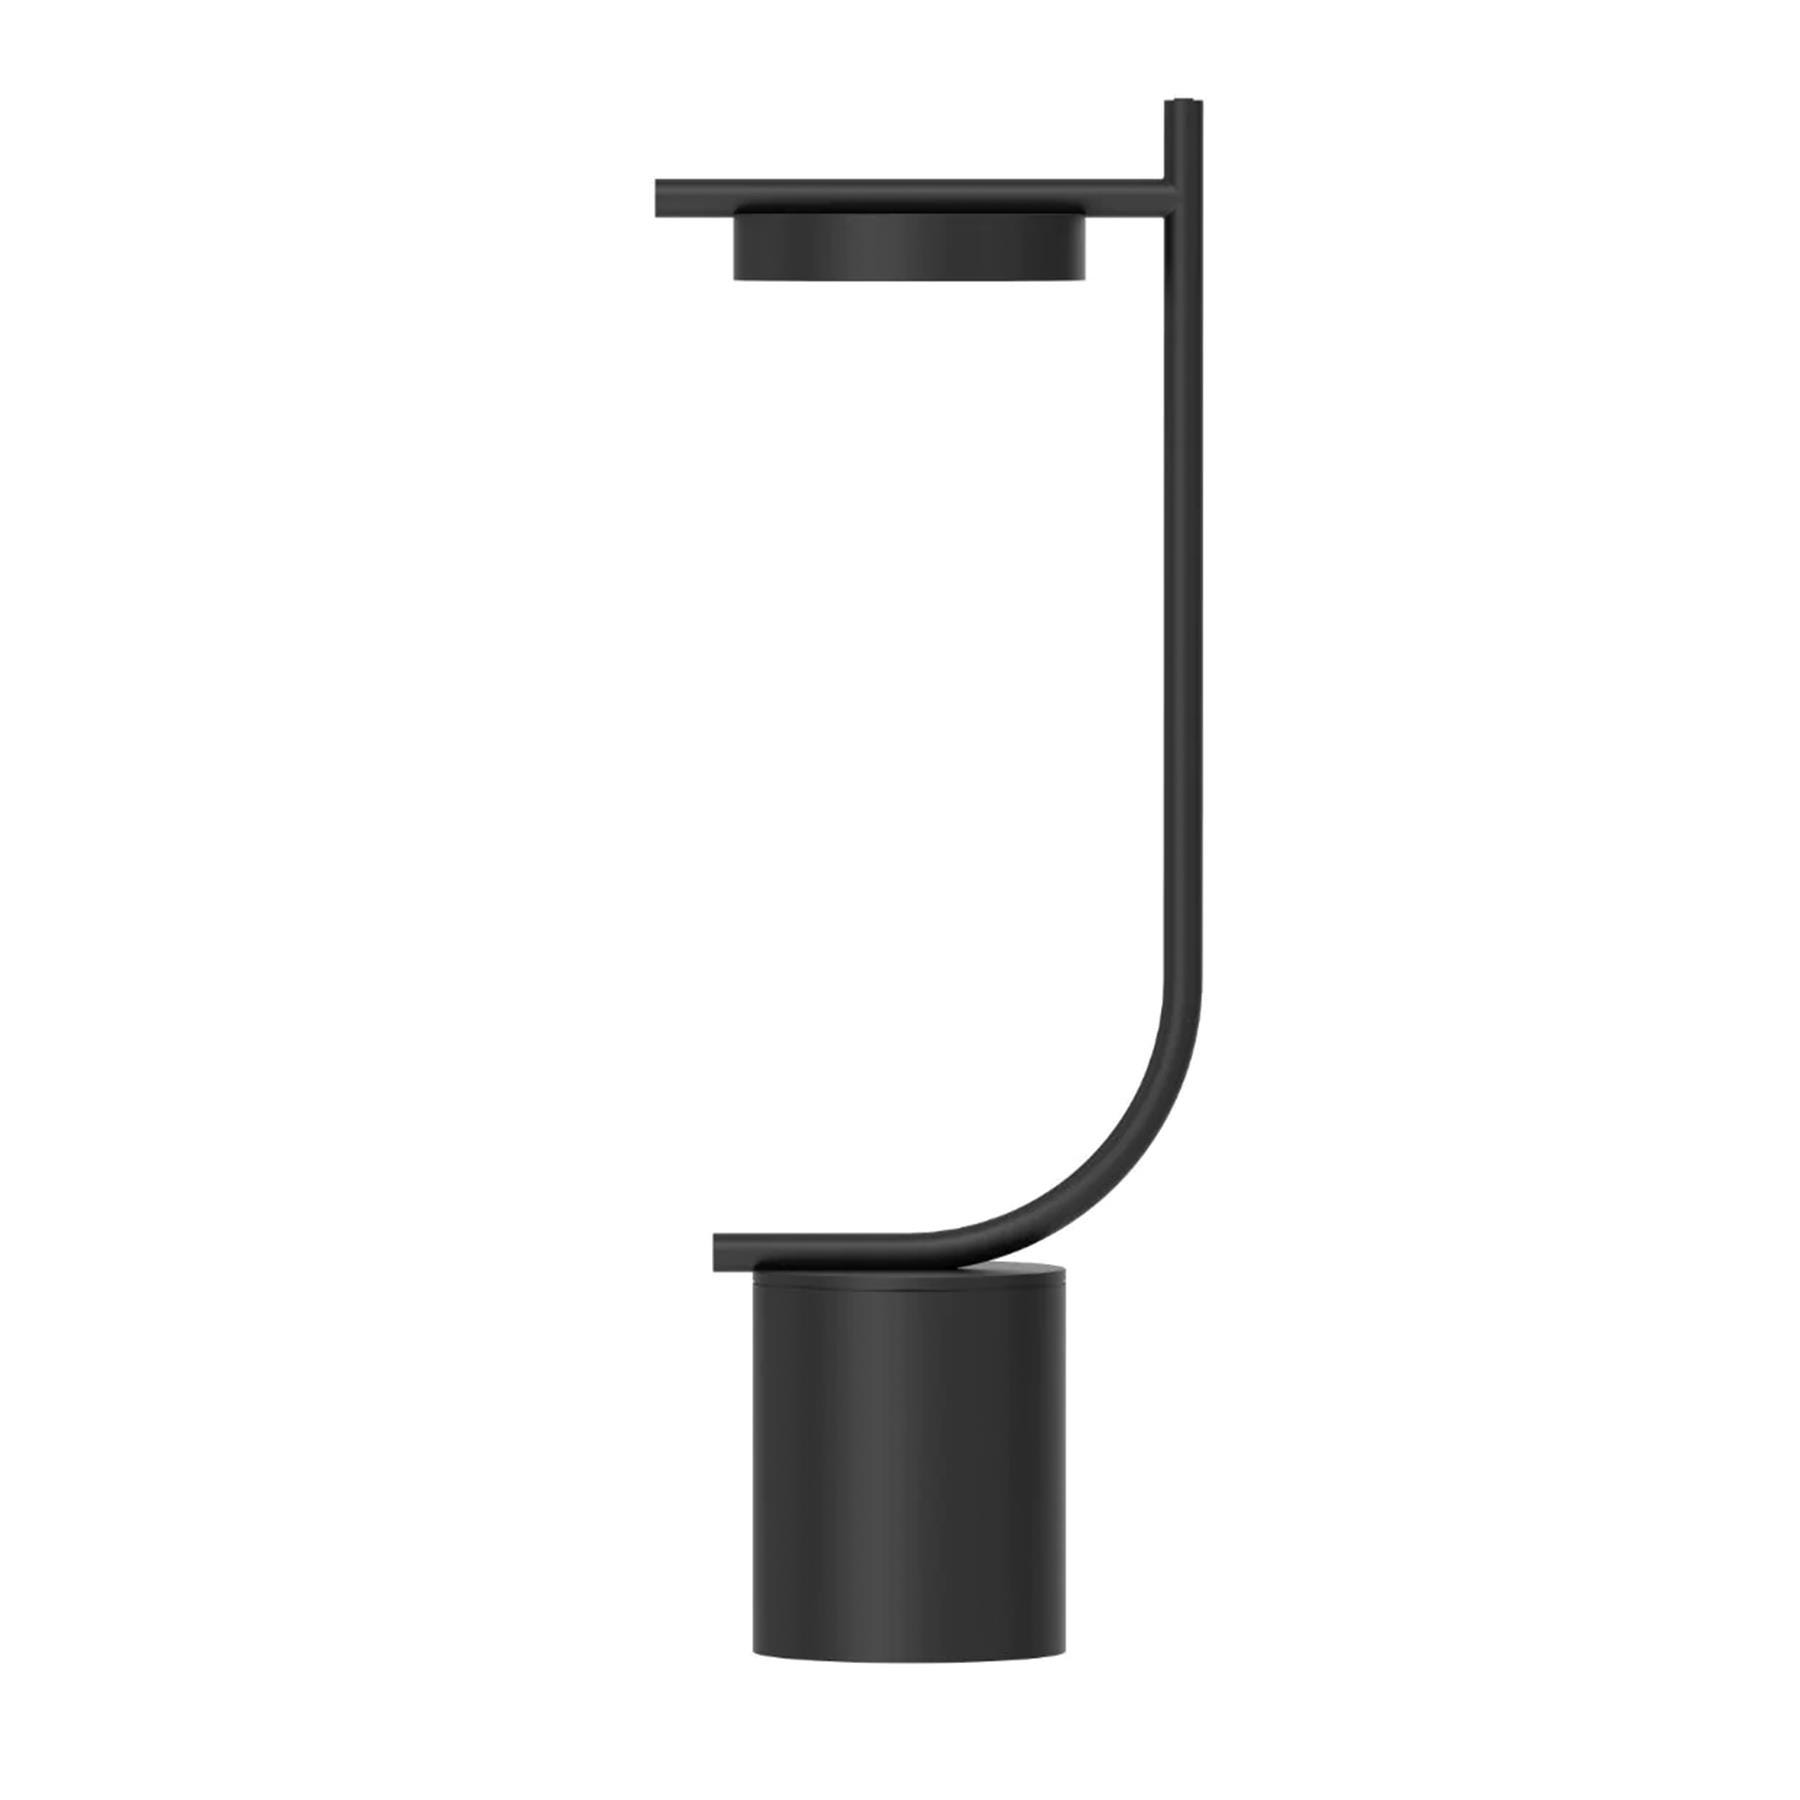 Grupa Igram Portable Table Lamp J Shape Black Designer Lighting From Holloways Of Ludlow